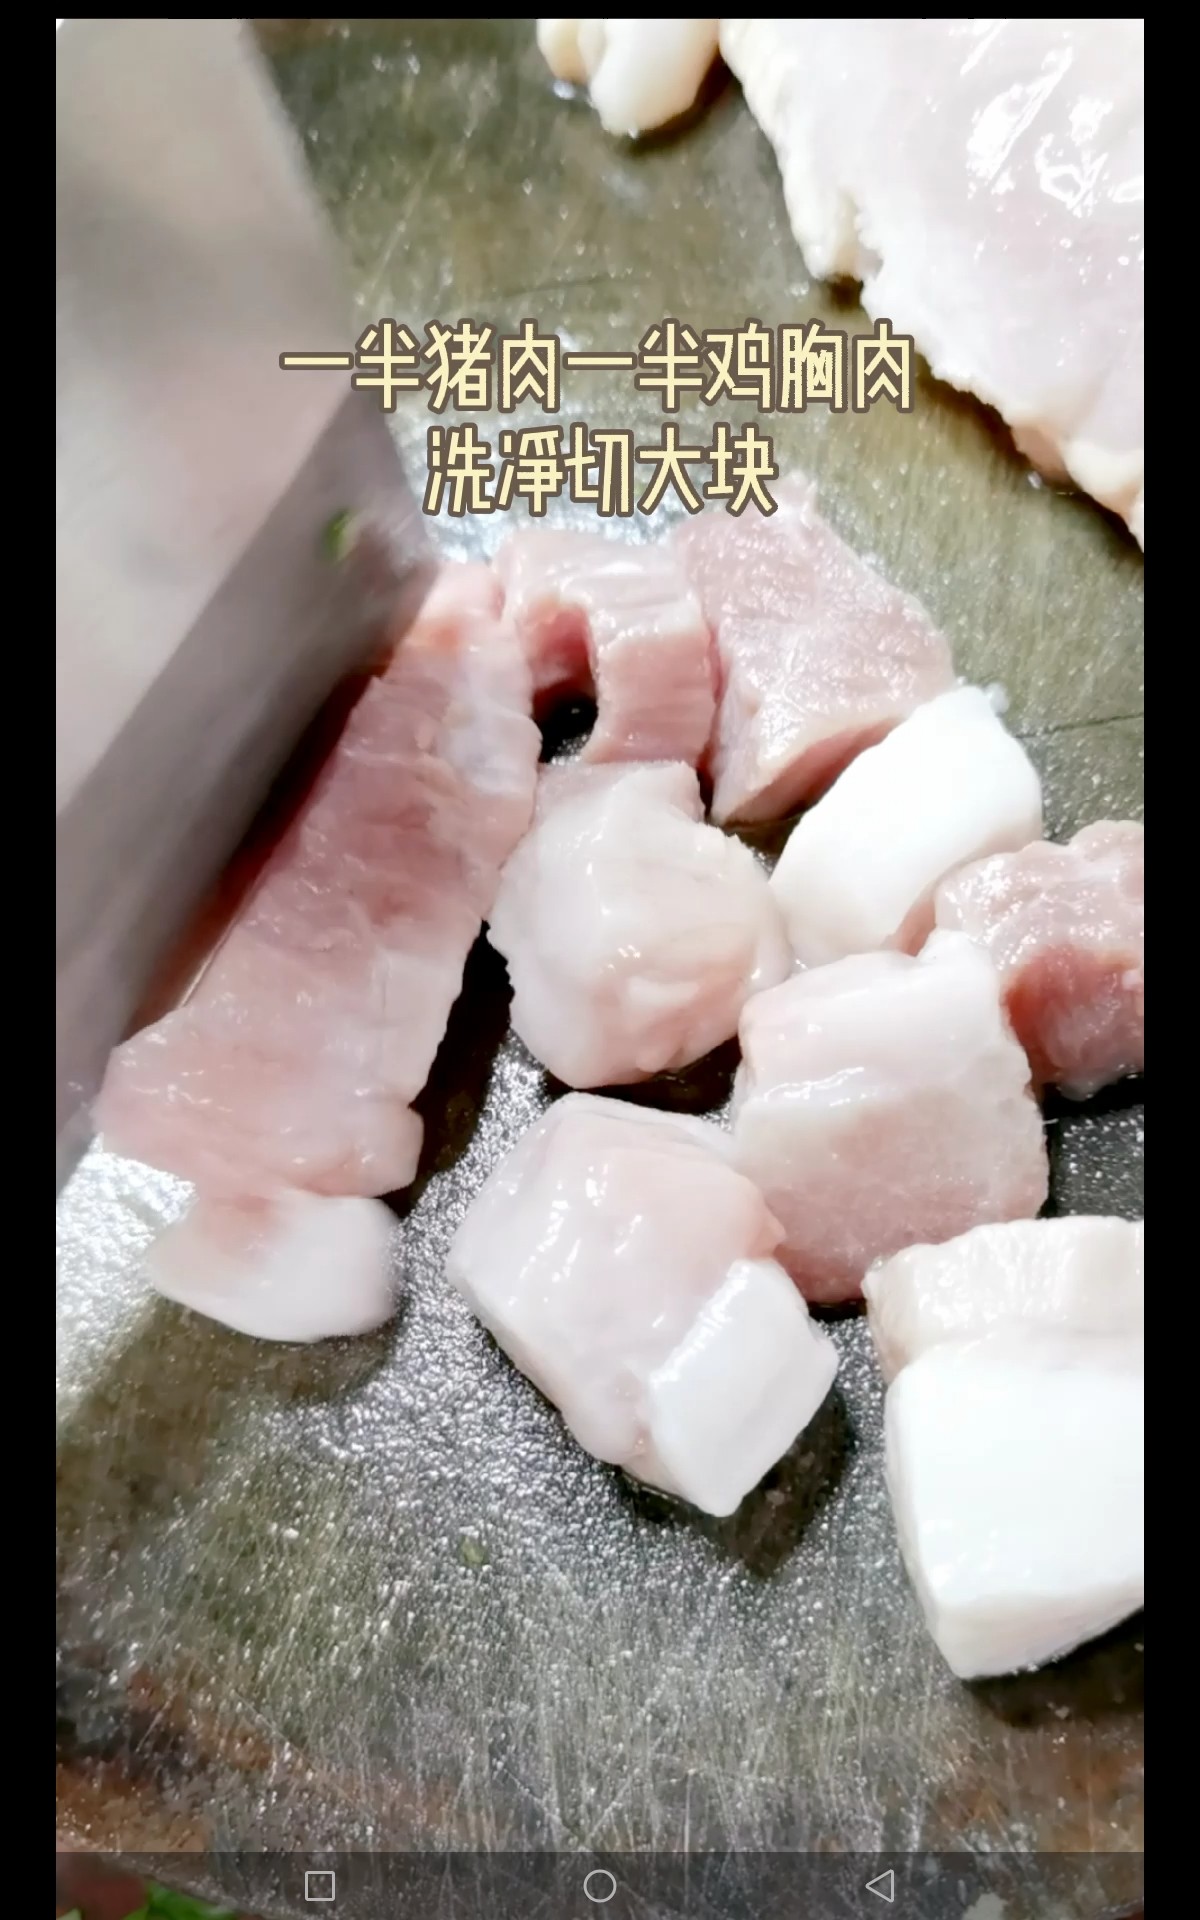 #冬至大如年# Meat Dumplings with Leek and Moss recipe